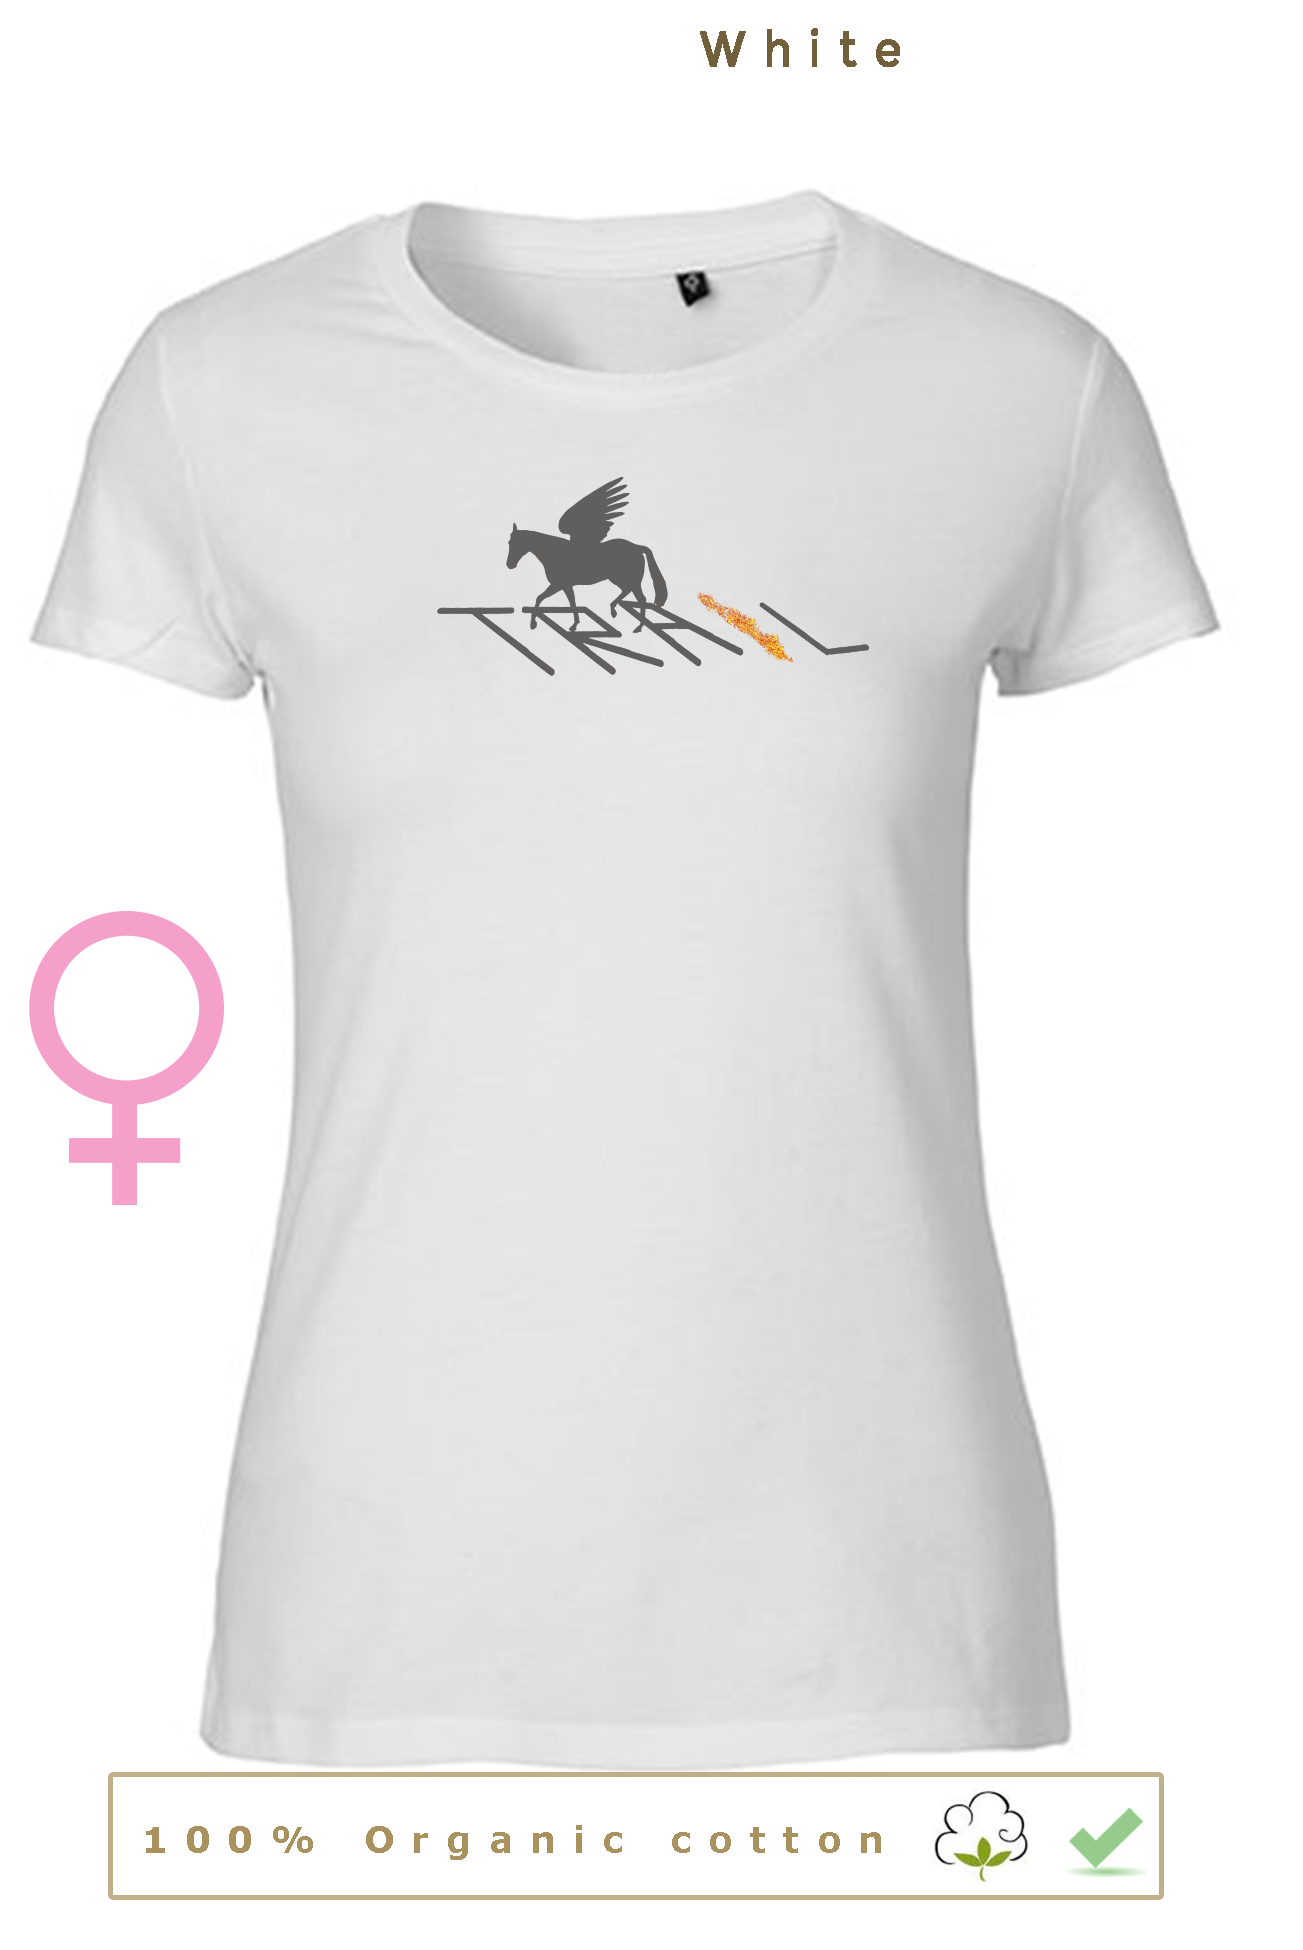 T-shirt BIO, 27€ pour homme/femme & 24€ pour enfant (disponible uniquement en blanc)